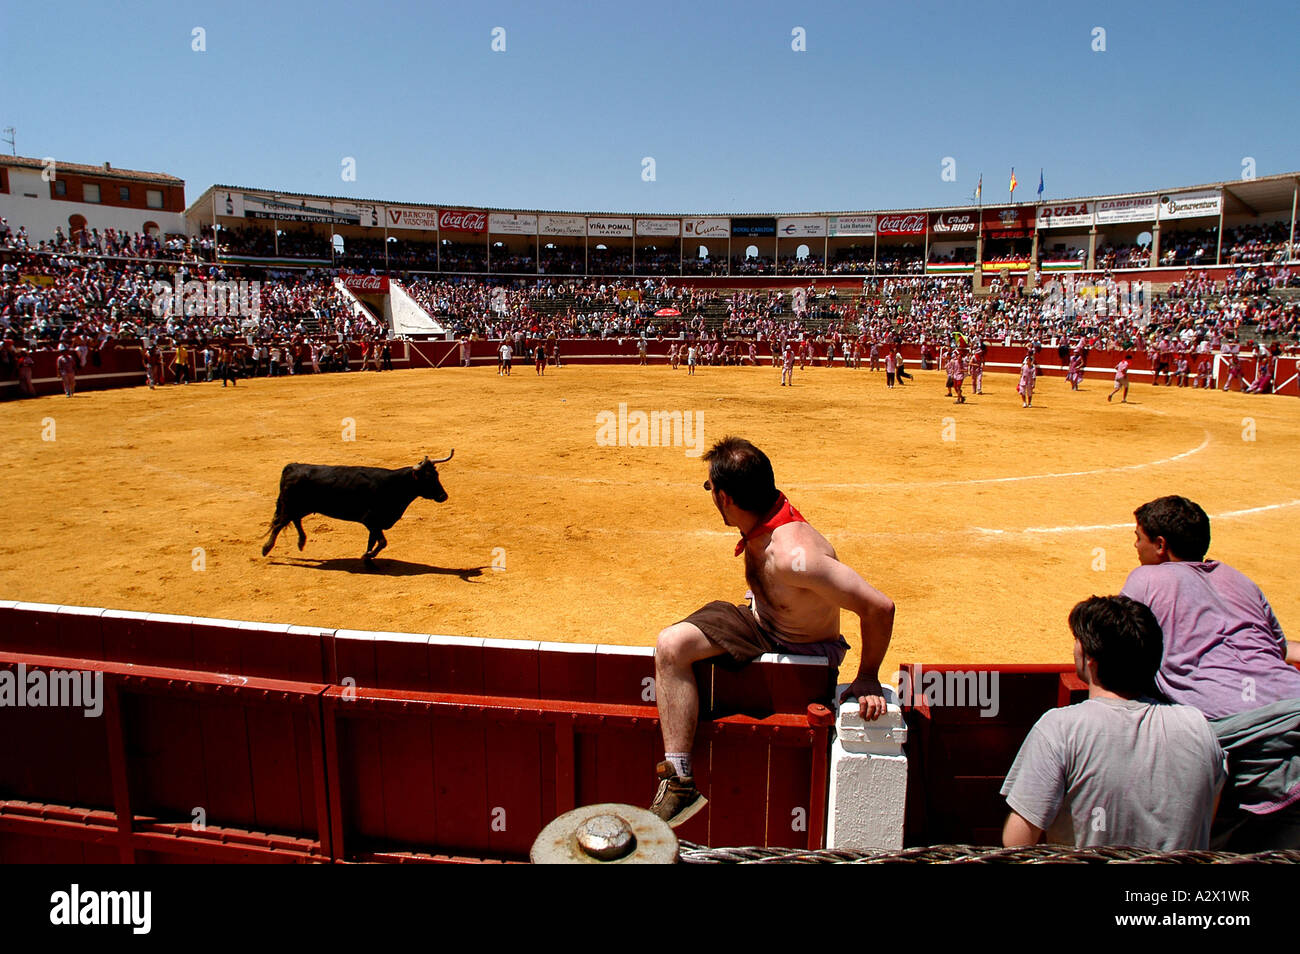 Schlacht von Wein, Weinfestival Haro, Spanien Stockfoto